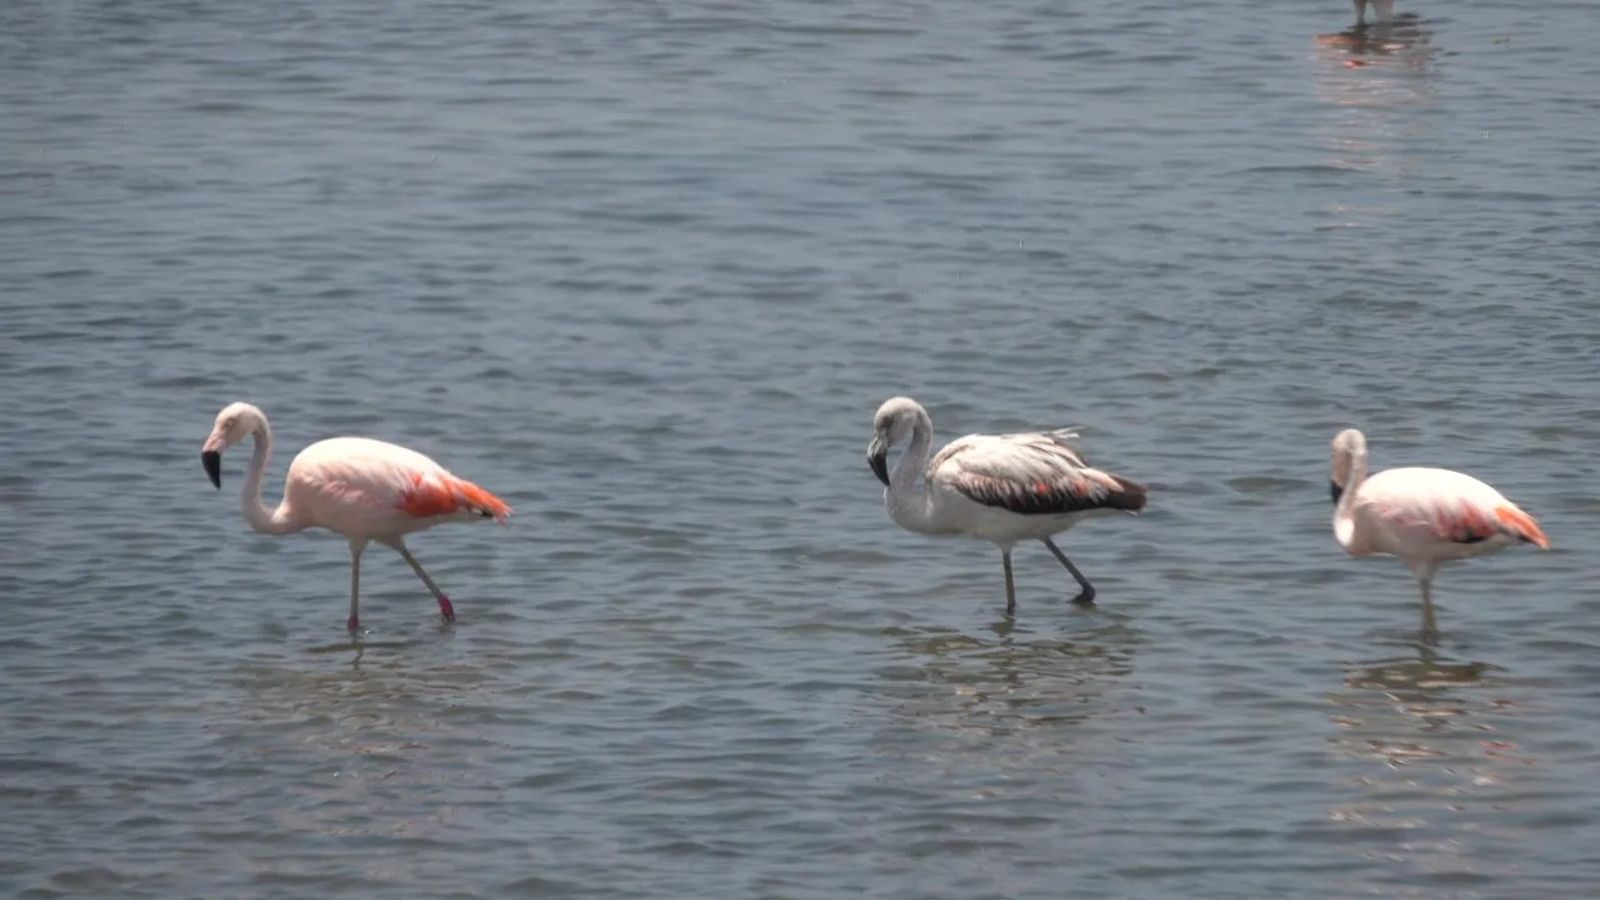 shore excursions in Pisco Peru - Baby Flamingos